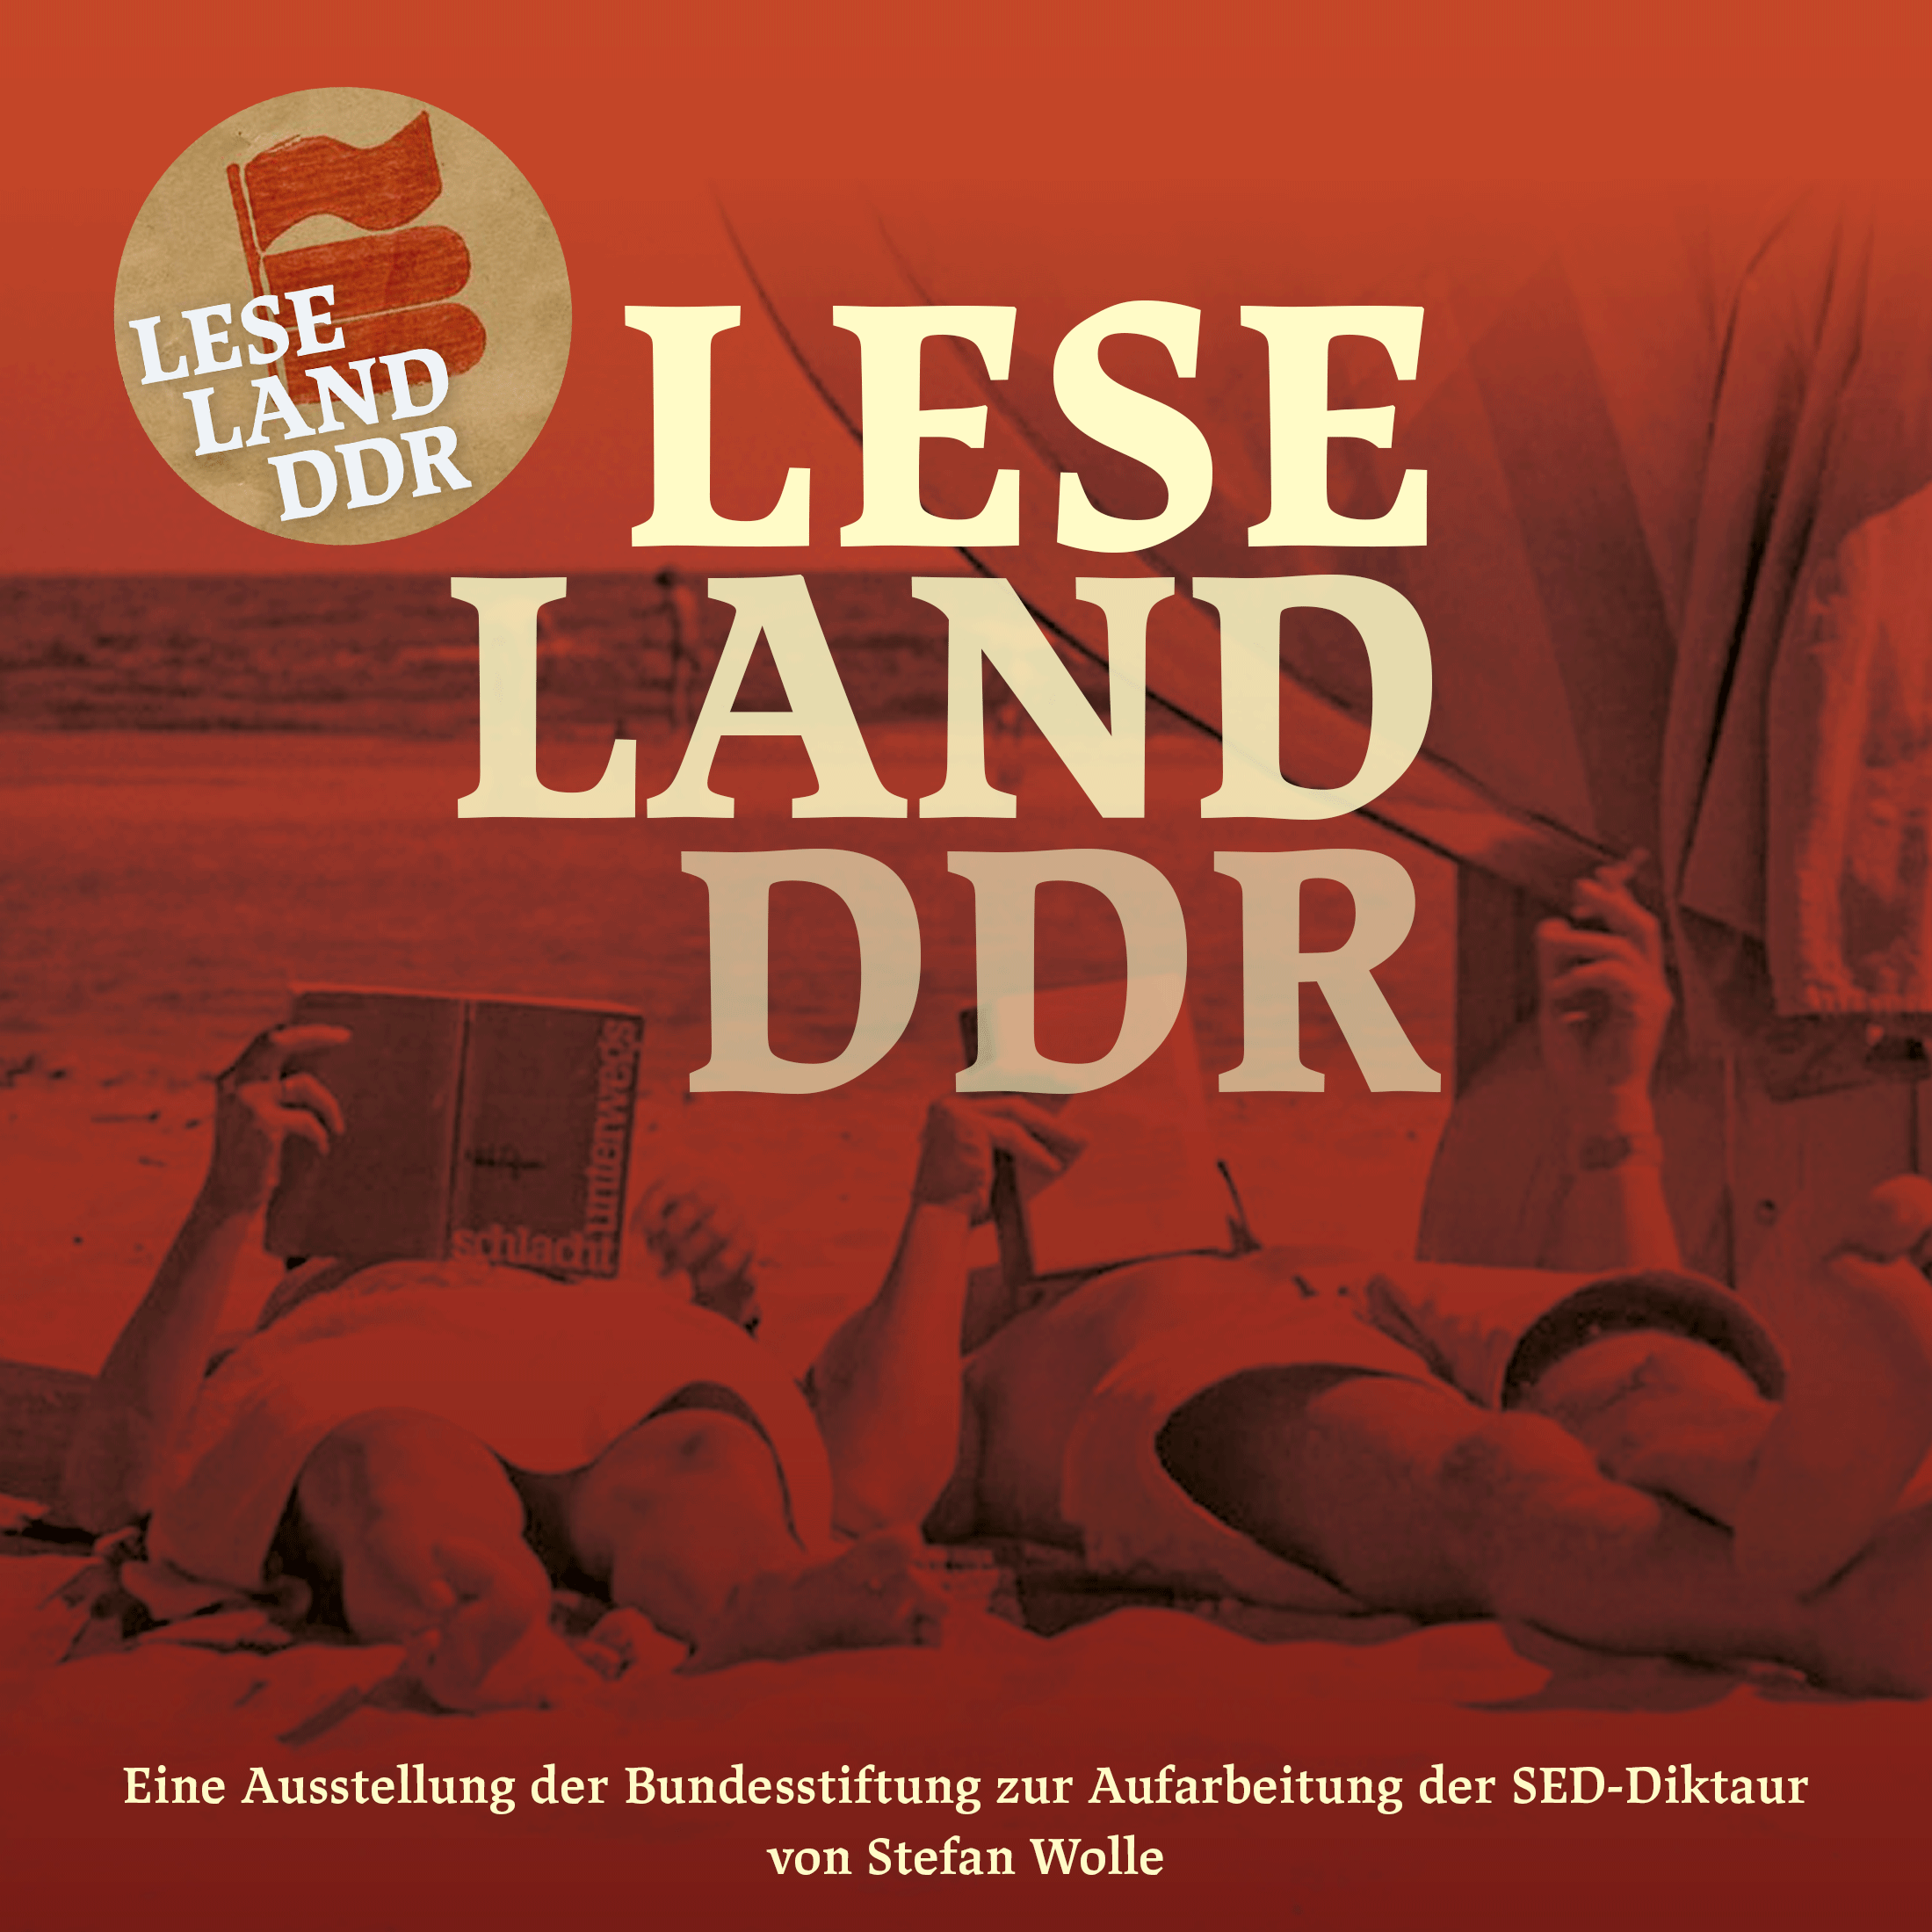 Ausstellungseröffnung "Leseland DDR"